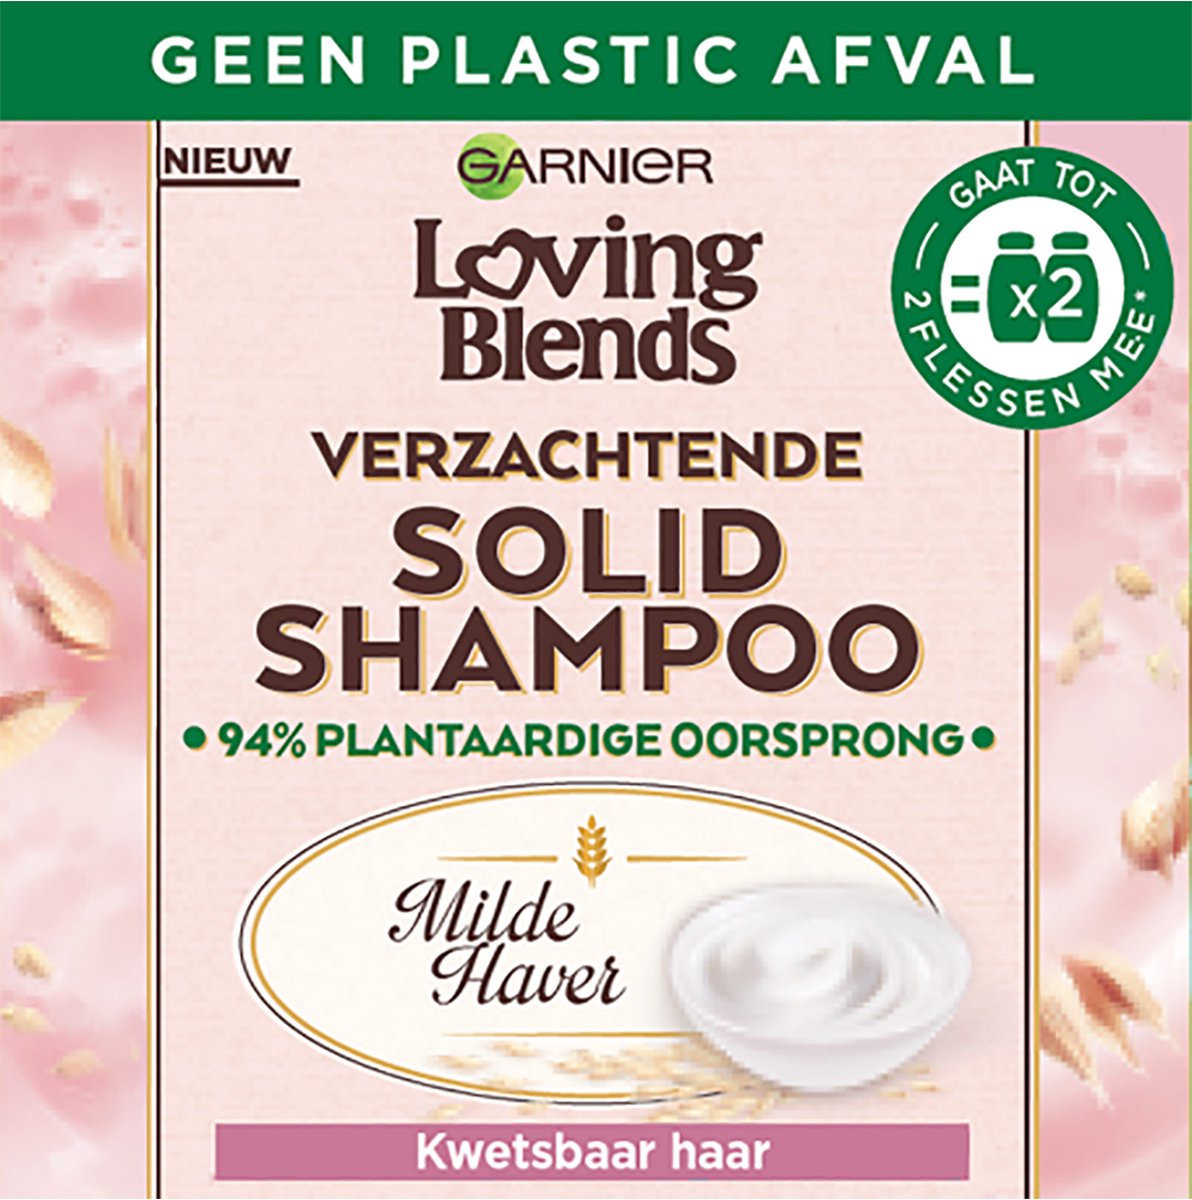 Garnier Loving Blends Milde Haver Verzachtende Solid Shampoo Bar - Kwetsbaar haar - 60g - Garnier